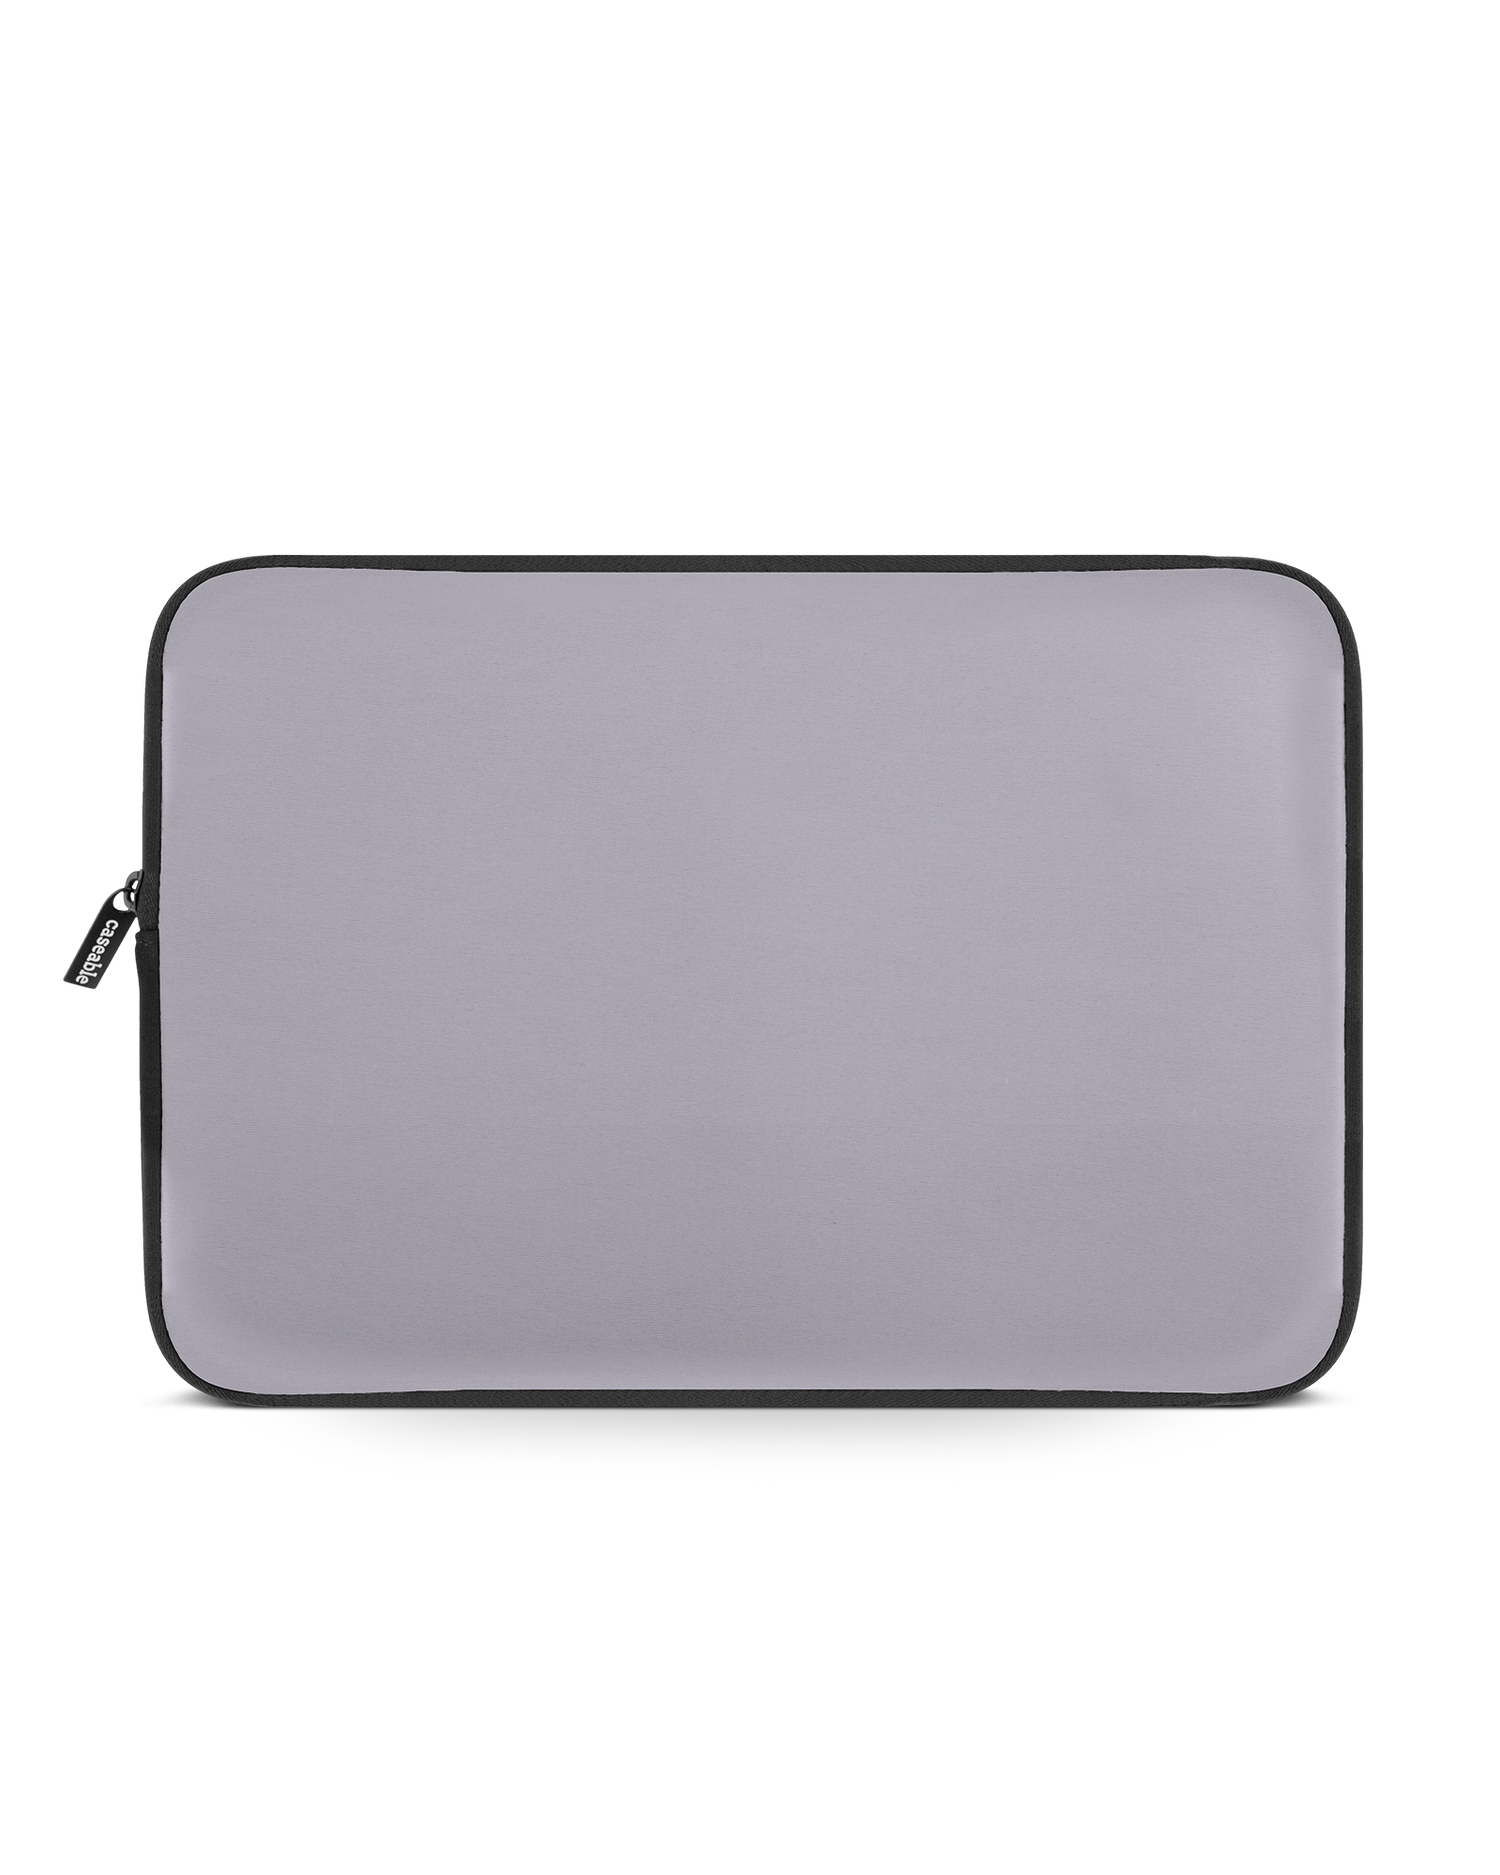 LIGHT PURPLE Laptop Case 14 inch: Front View